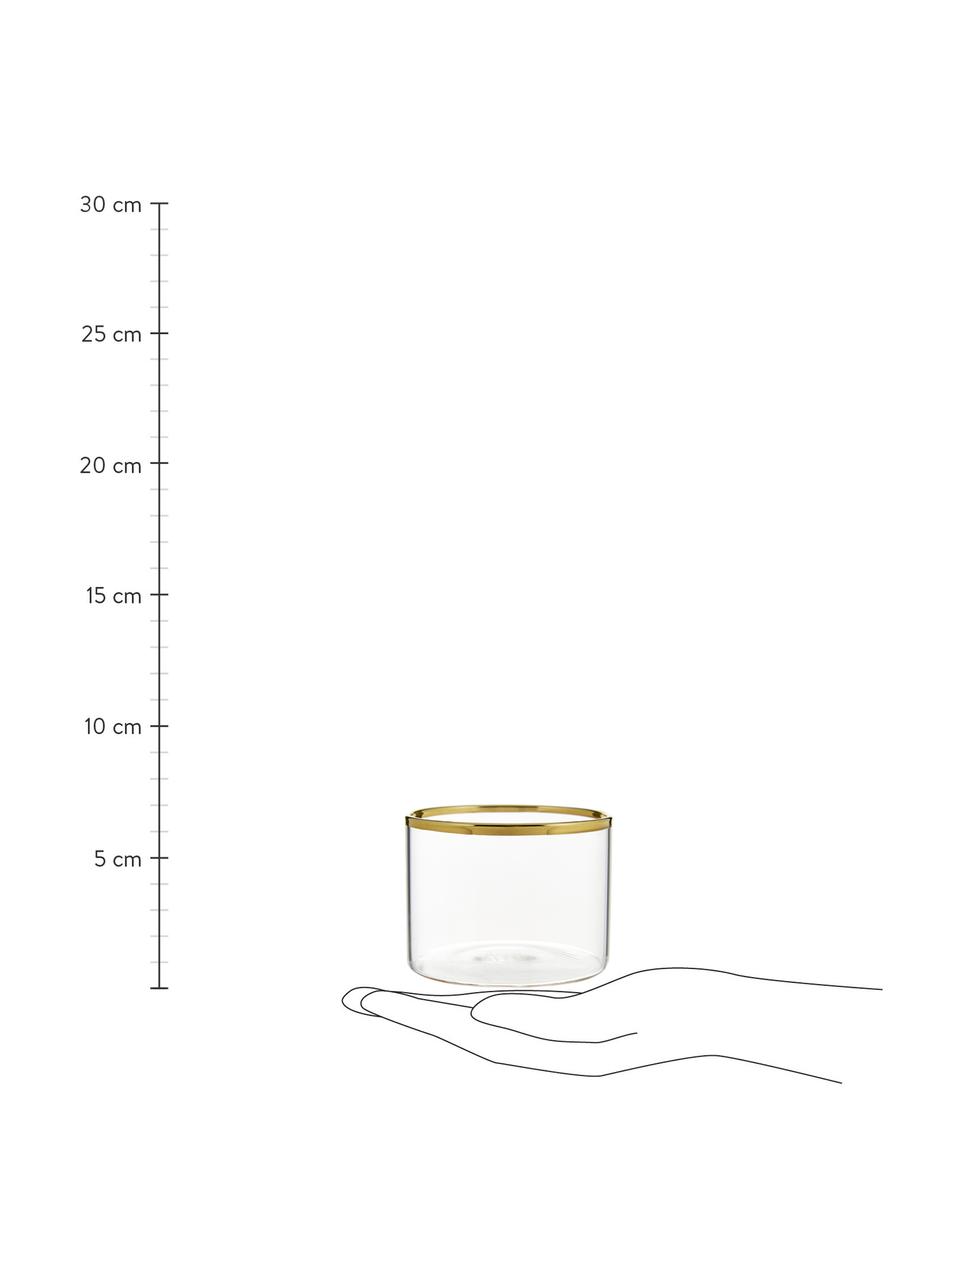 Bicchiere acqua in vetro borosilicato con bordo dorato Boro 6 pz, Vetro borosilicato, Trasparente, dorato, Ø 8 x Alt. 6 cm